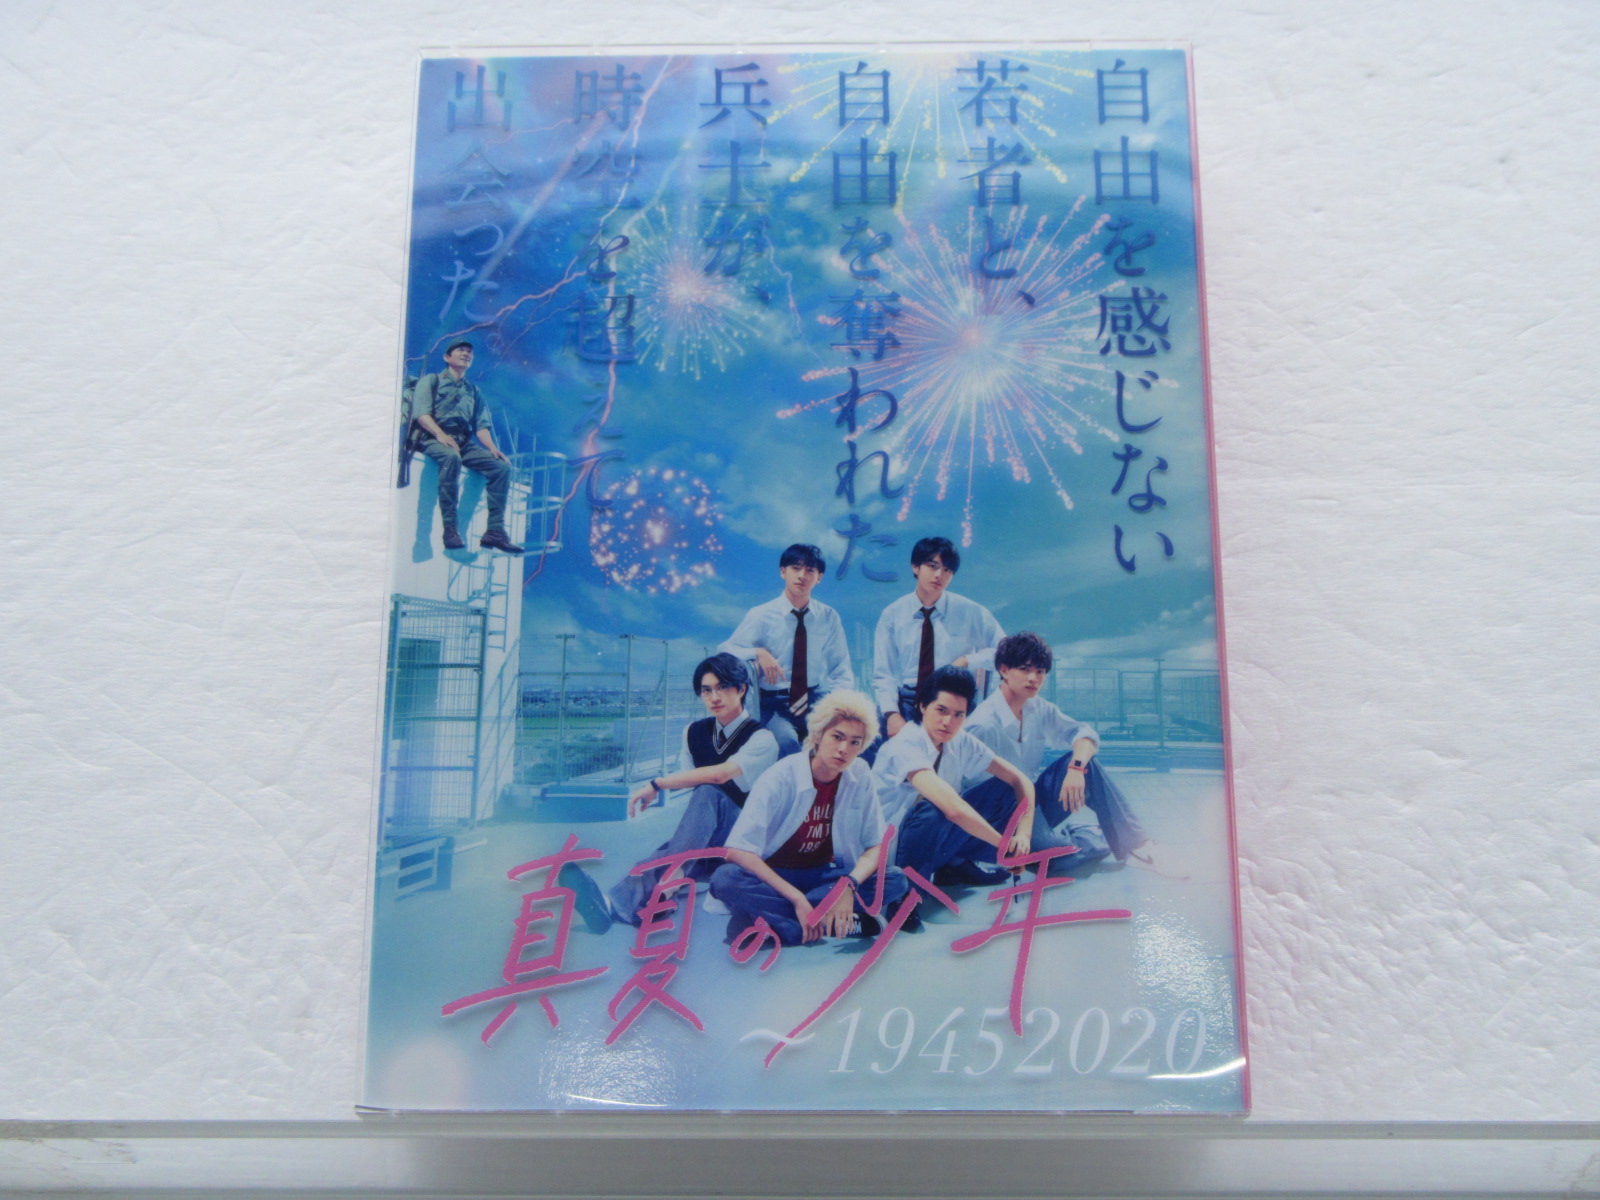 真夏の少年～19452020 Blu-ray BOX〈5枚組〉 - 日本映画